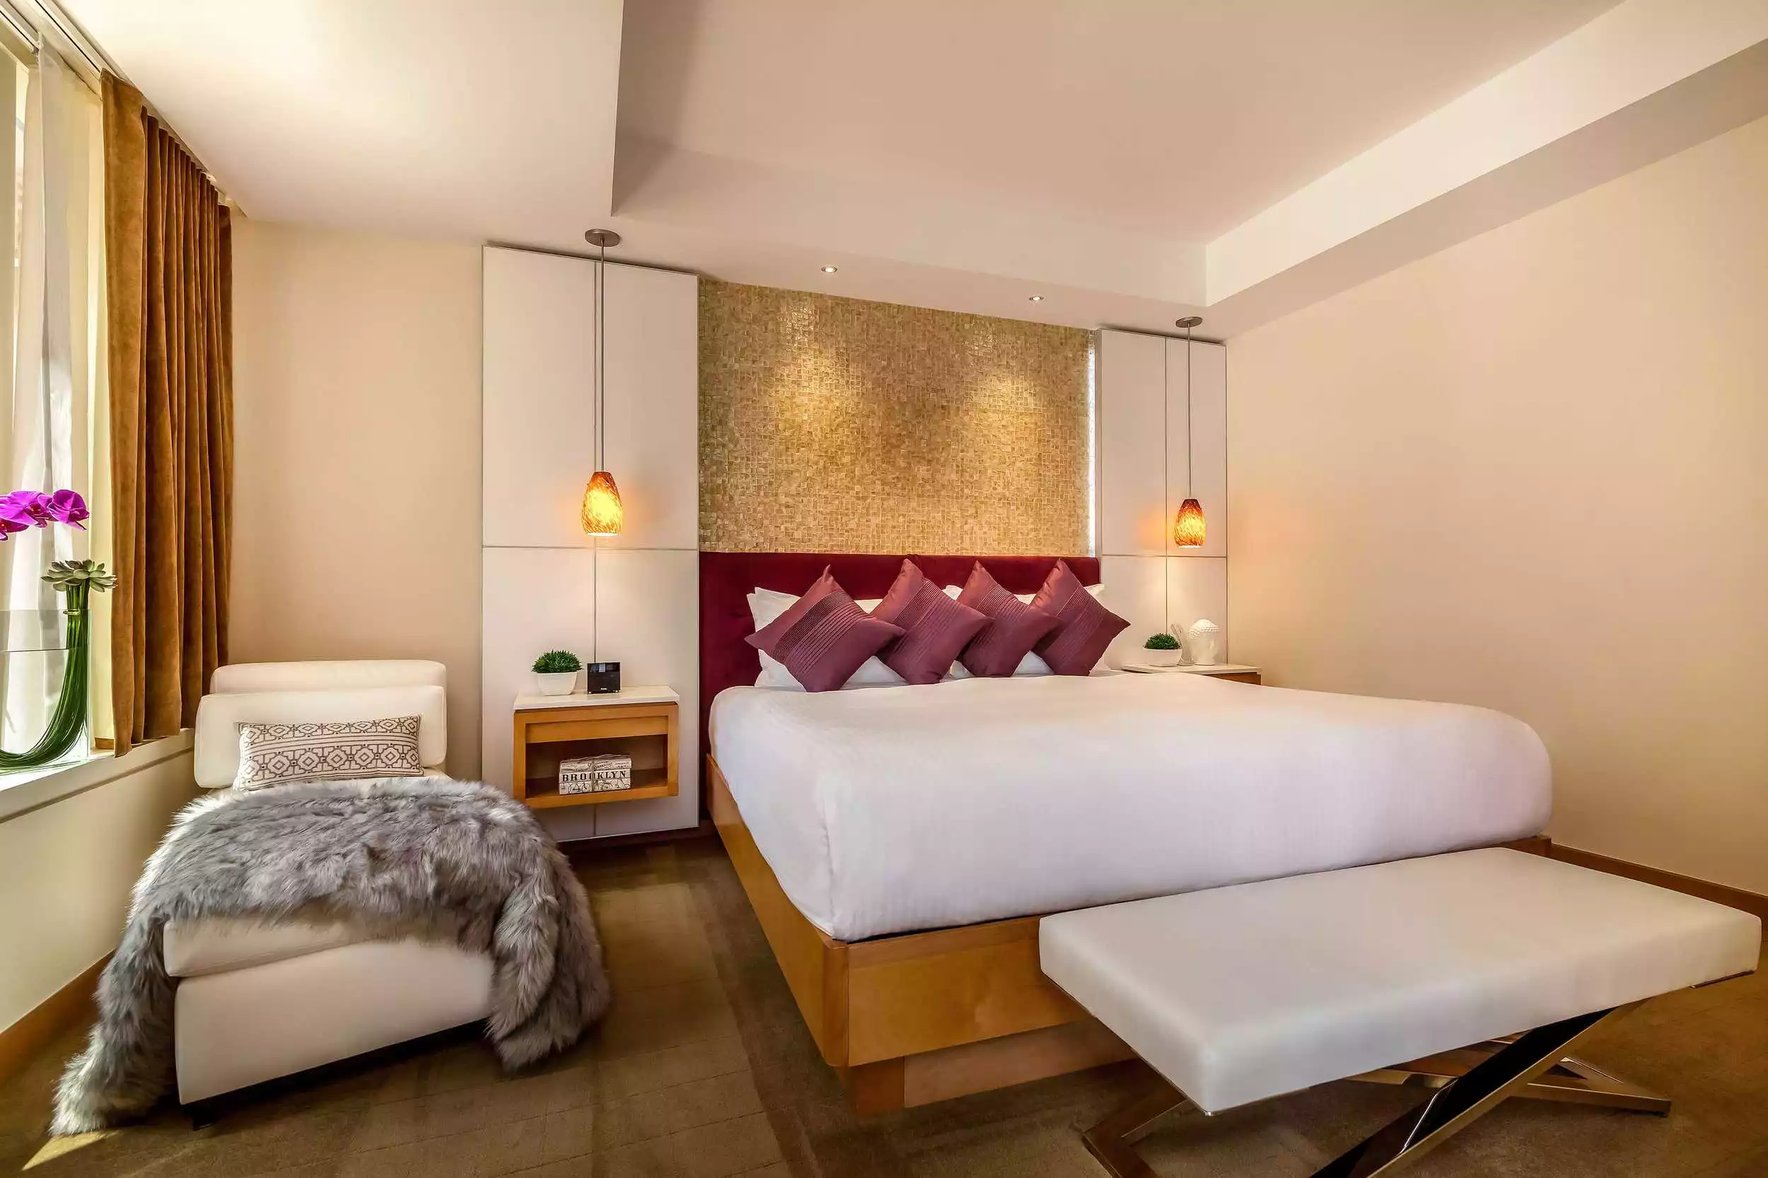 One-bedroom-suite-with-terrace-bedroom-Concorde-hotel-1